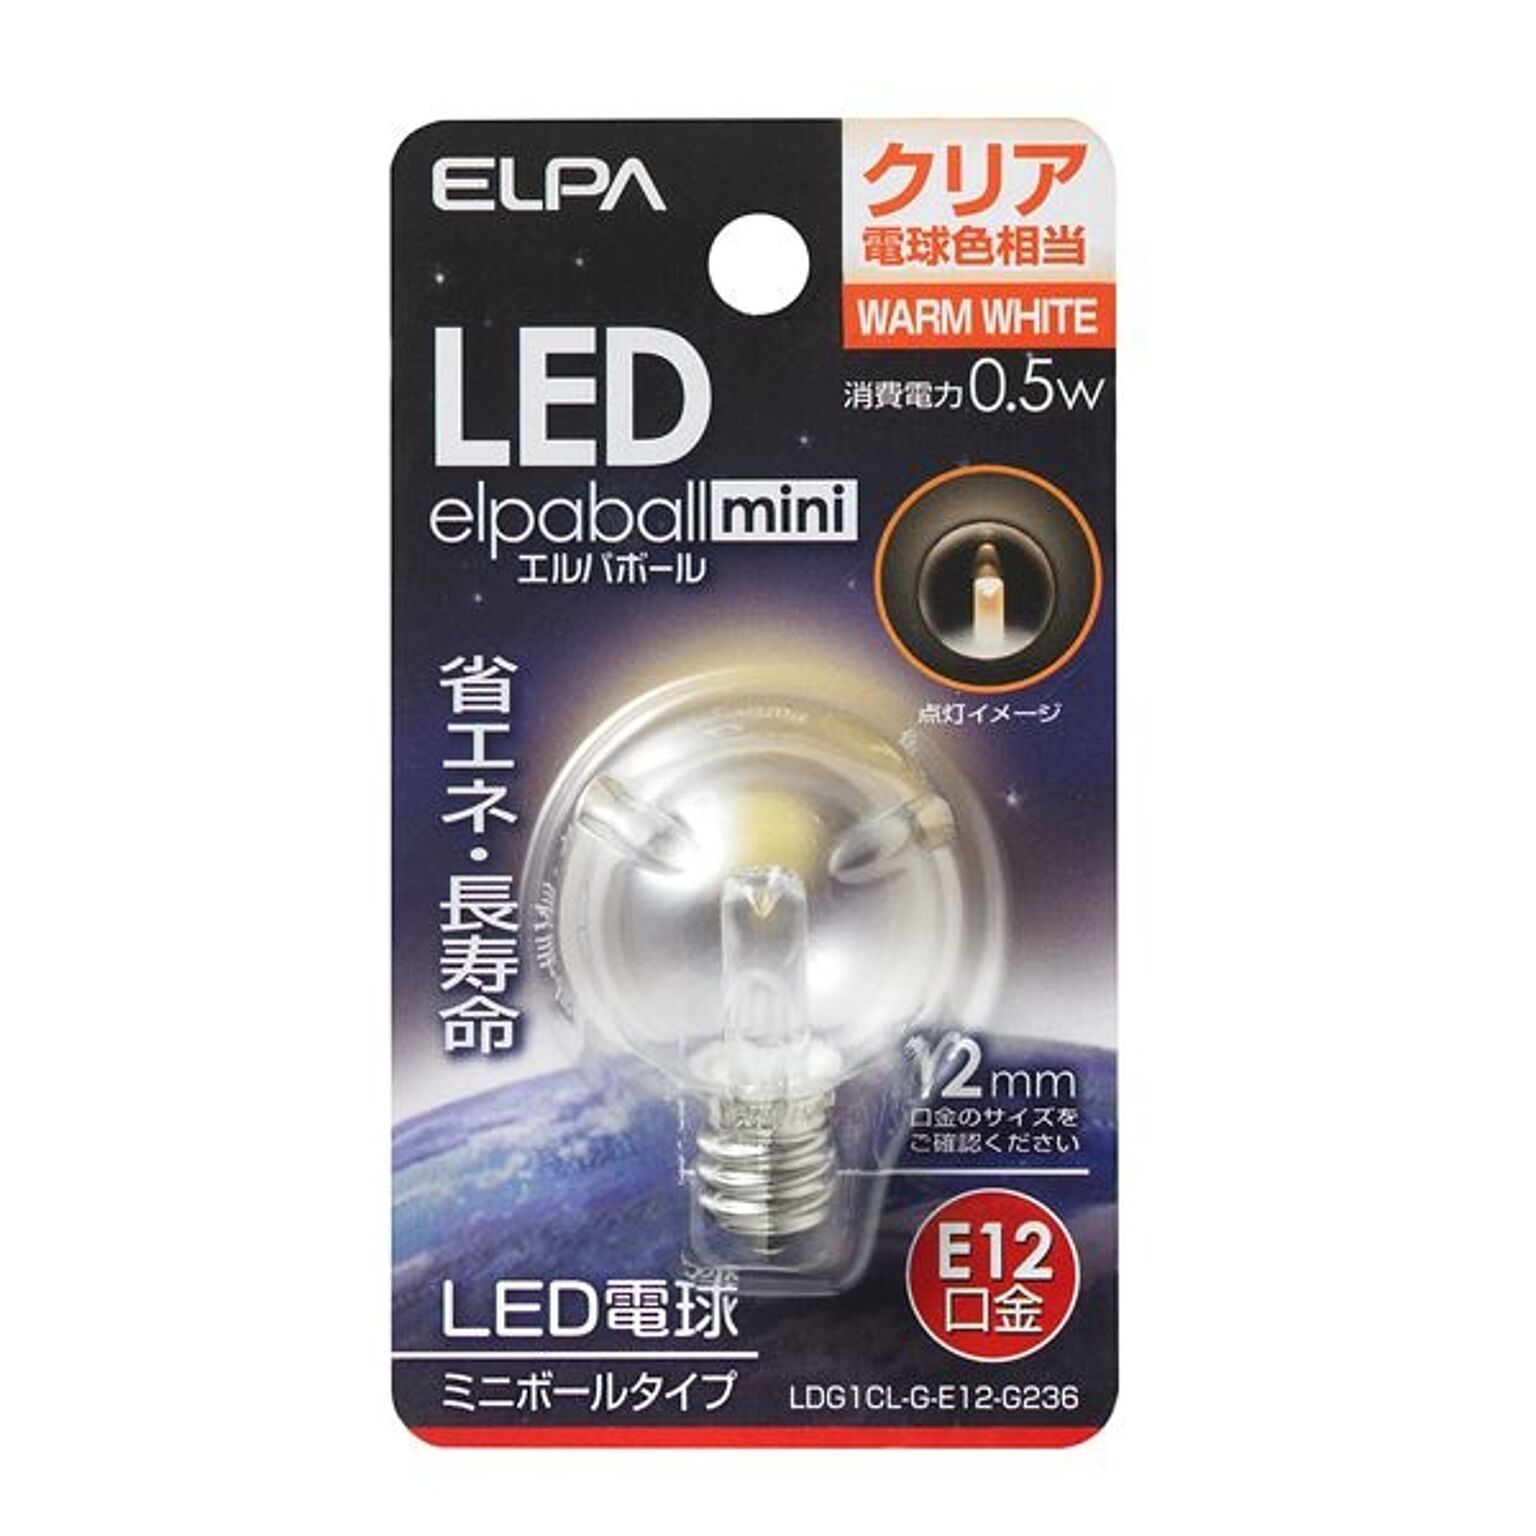 （まとめ） ELPA LED装飾電球 ミニボール球形 E12 G30 クリア電球色 LDG1CL-G-E12-G236 【×5セット】